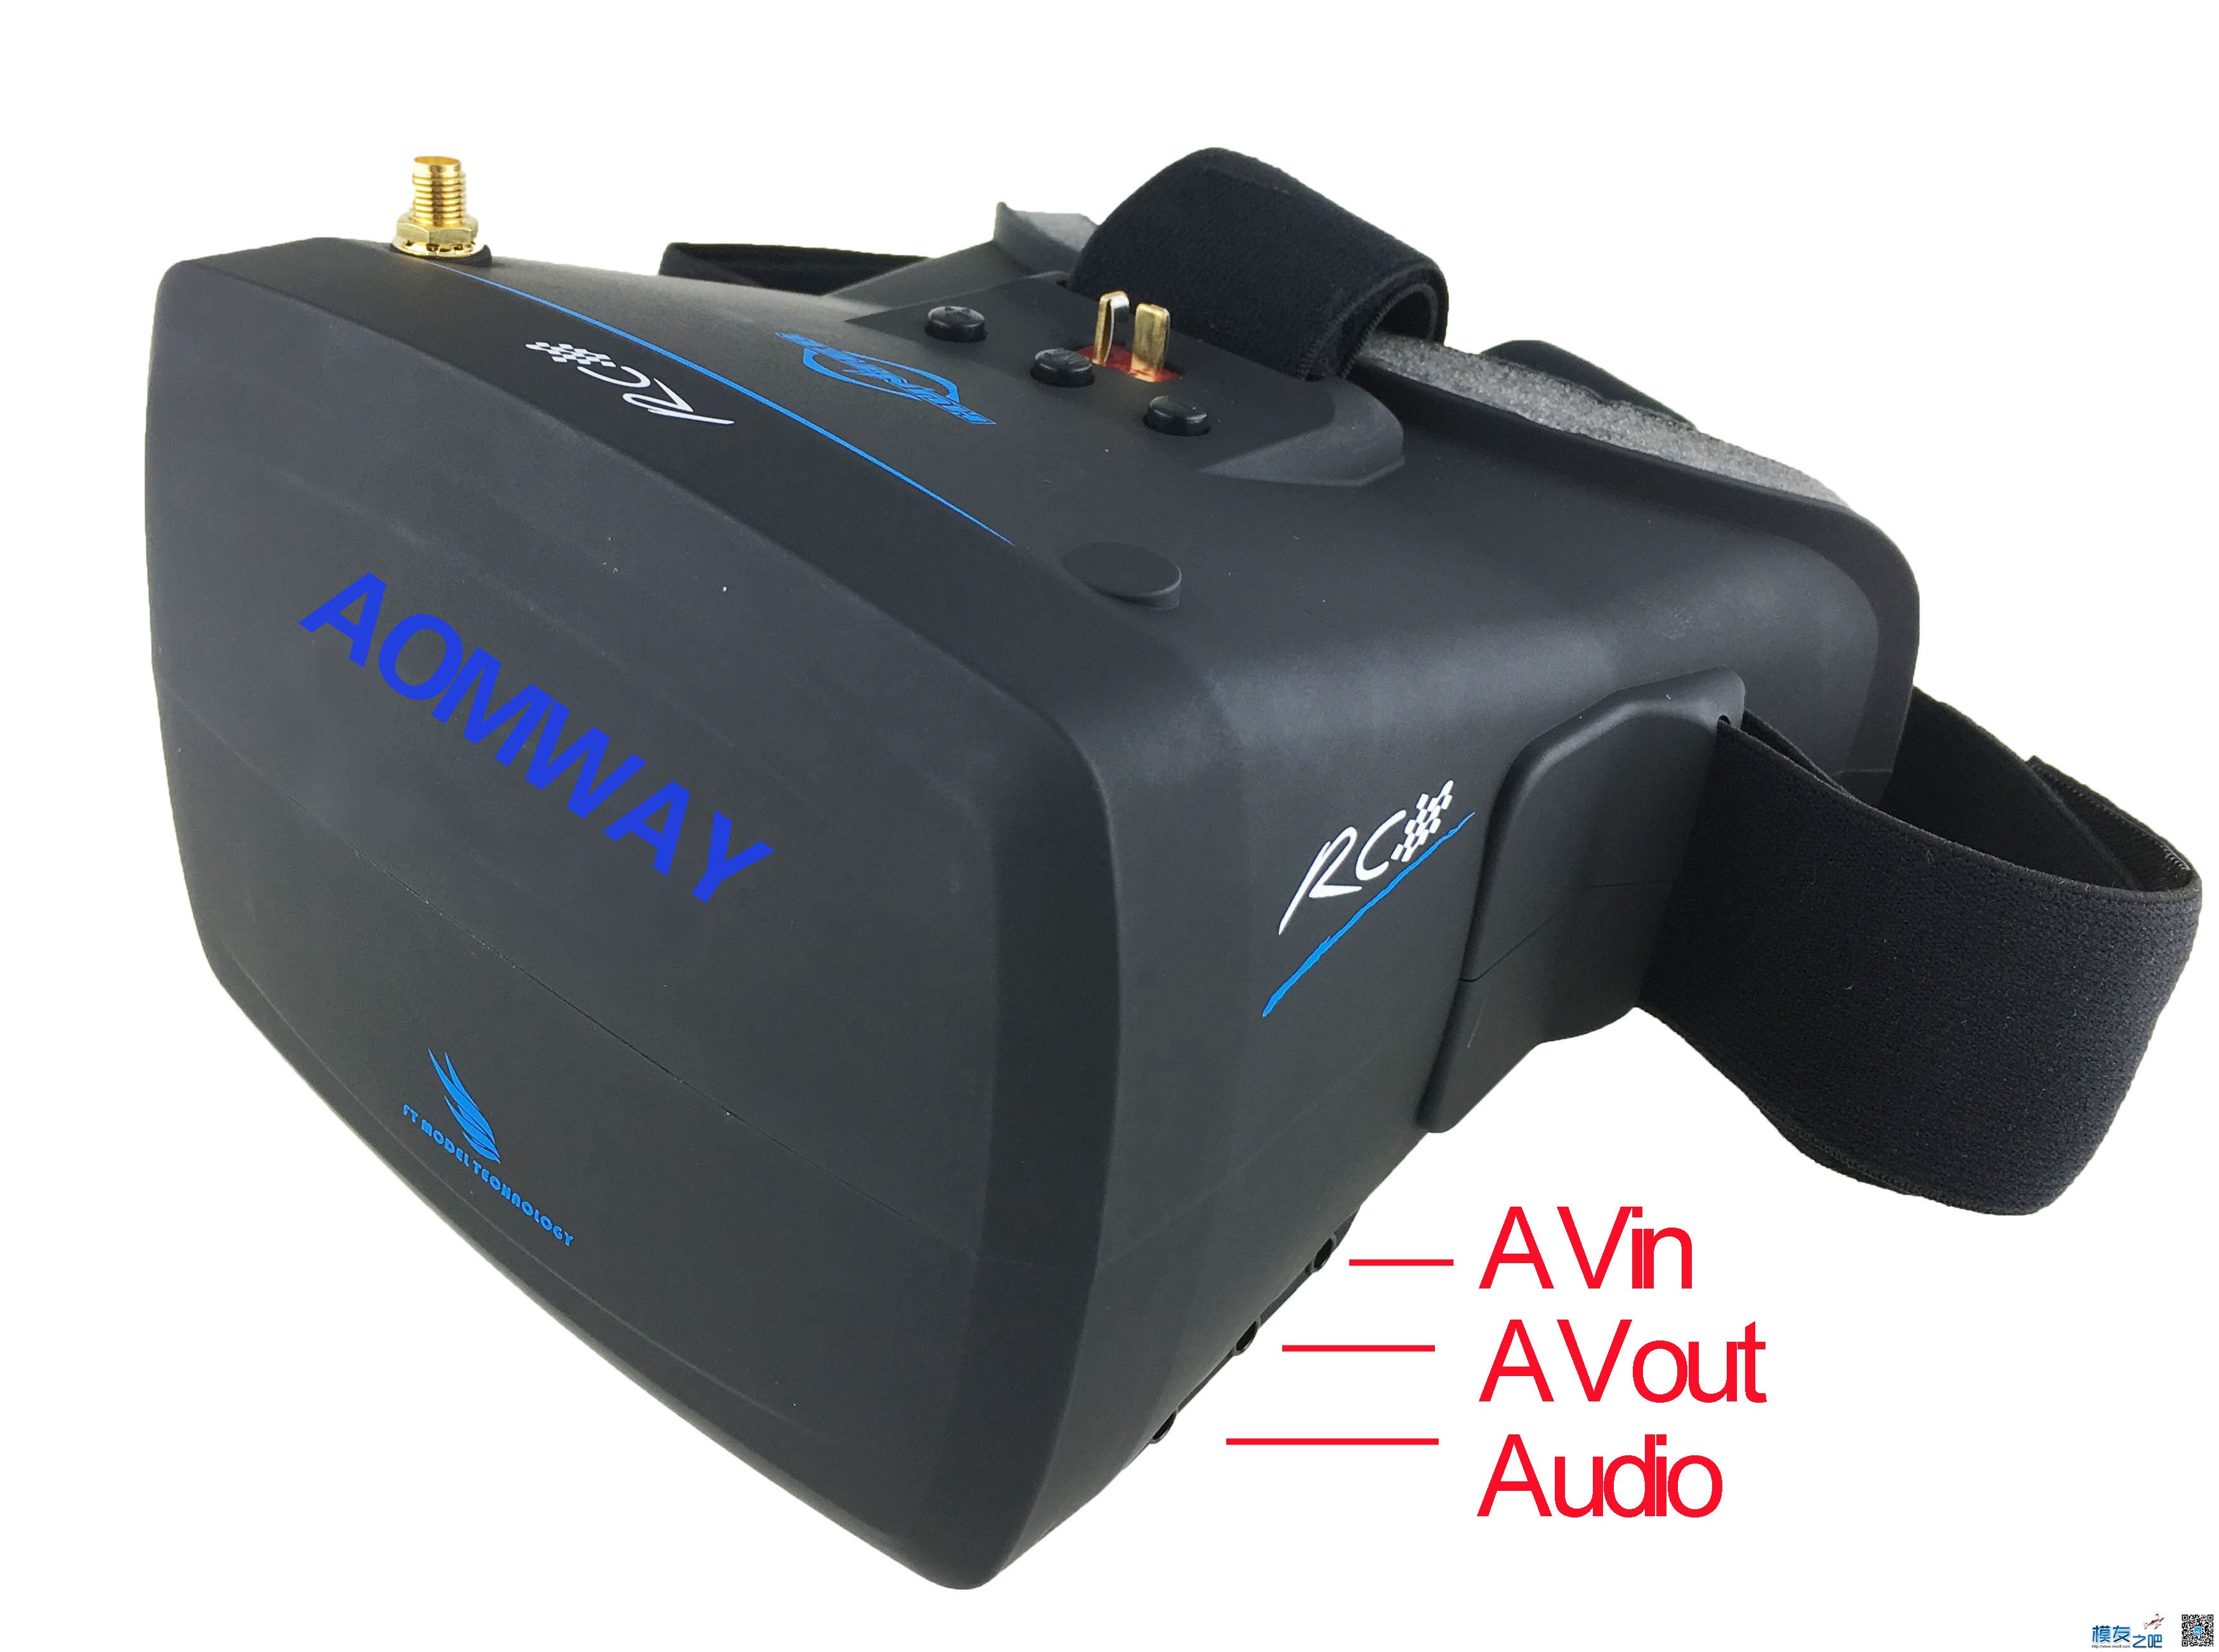 【模友之吧】AOMWAY VR Goggles V1 视频眼镜测试团购活动！ 电池,天线,图传,接收机,论坛活动 作者:飞天狼 2807 